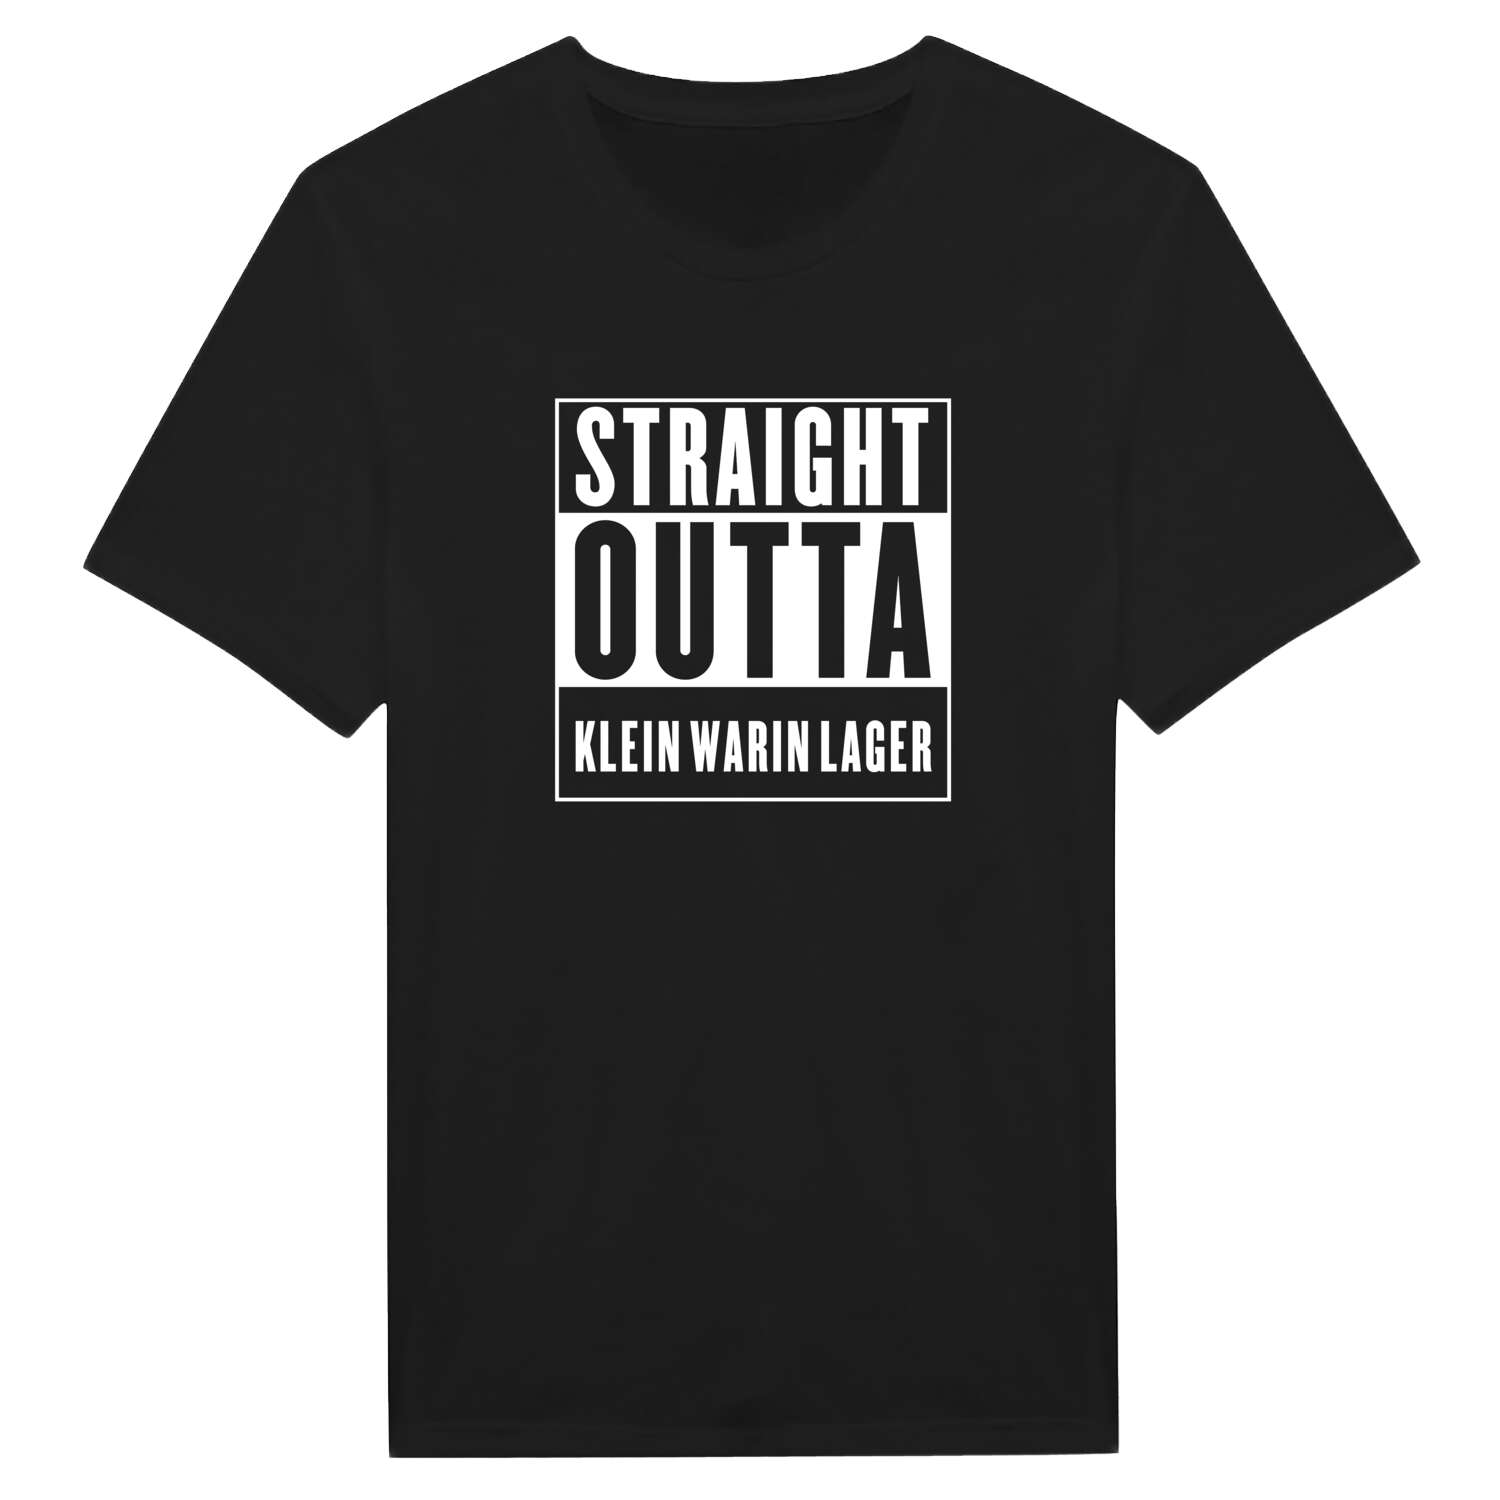 Klein Warin Lager T-Shirt »Straight Outta«